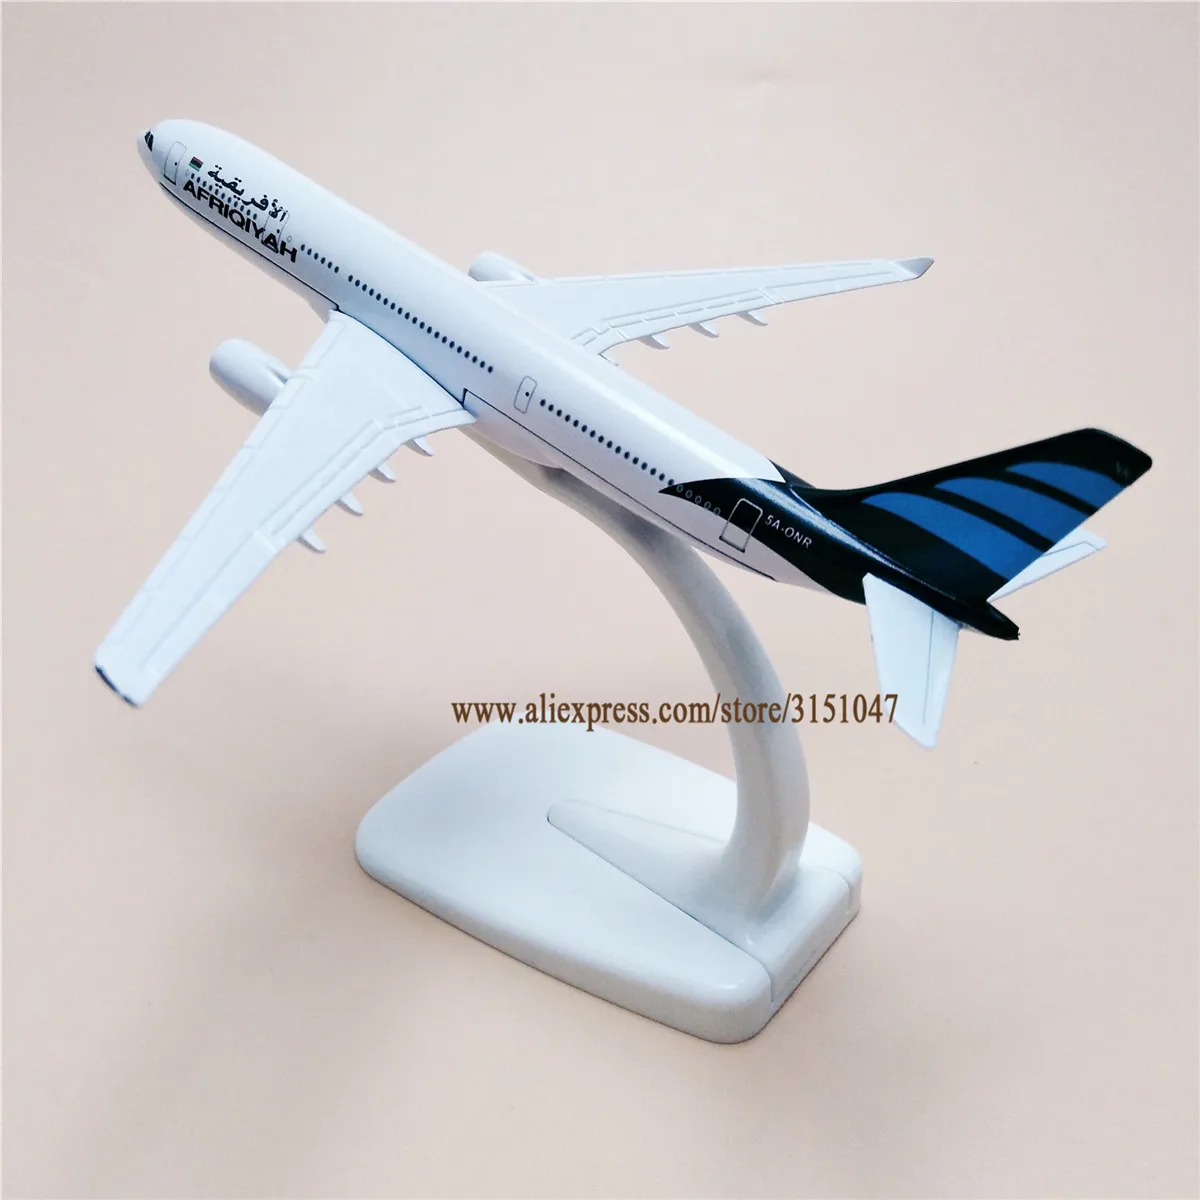 16cm אוויר לוב Afriqiyah איירבוס 330 A330 איירליינס מטוס דגם סגסוגת מתכת Diecast דגם מטוס מטוסי הודו איירווייס מתנה